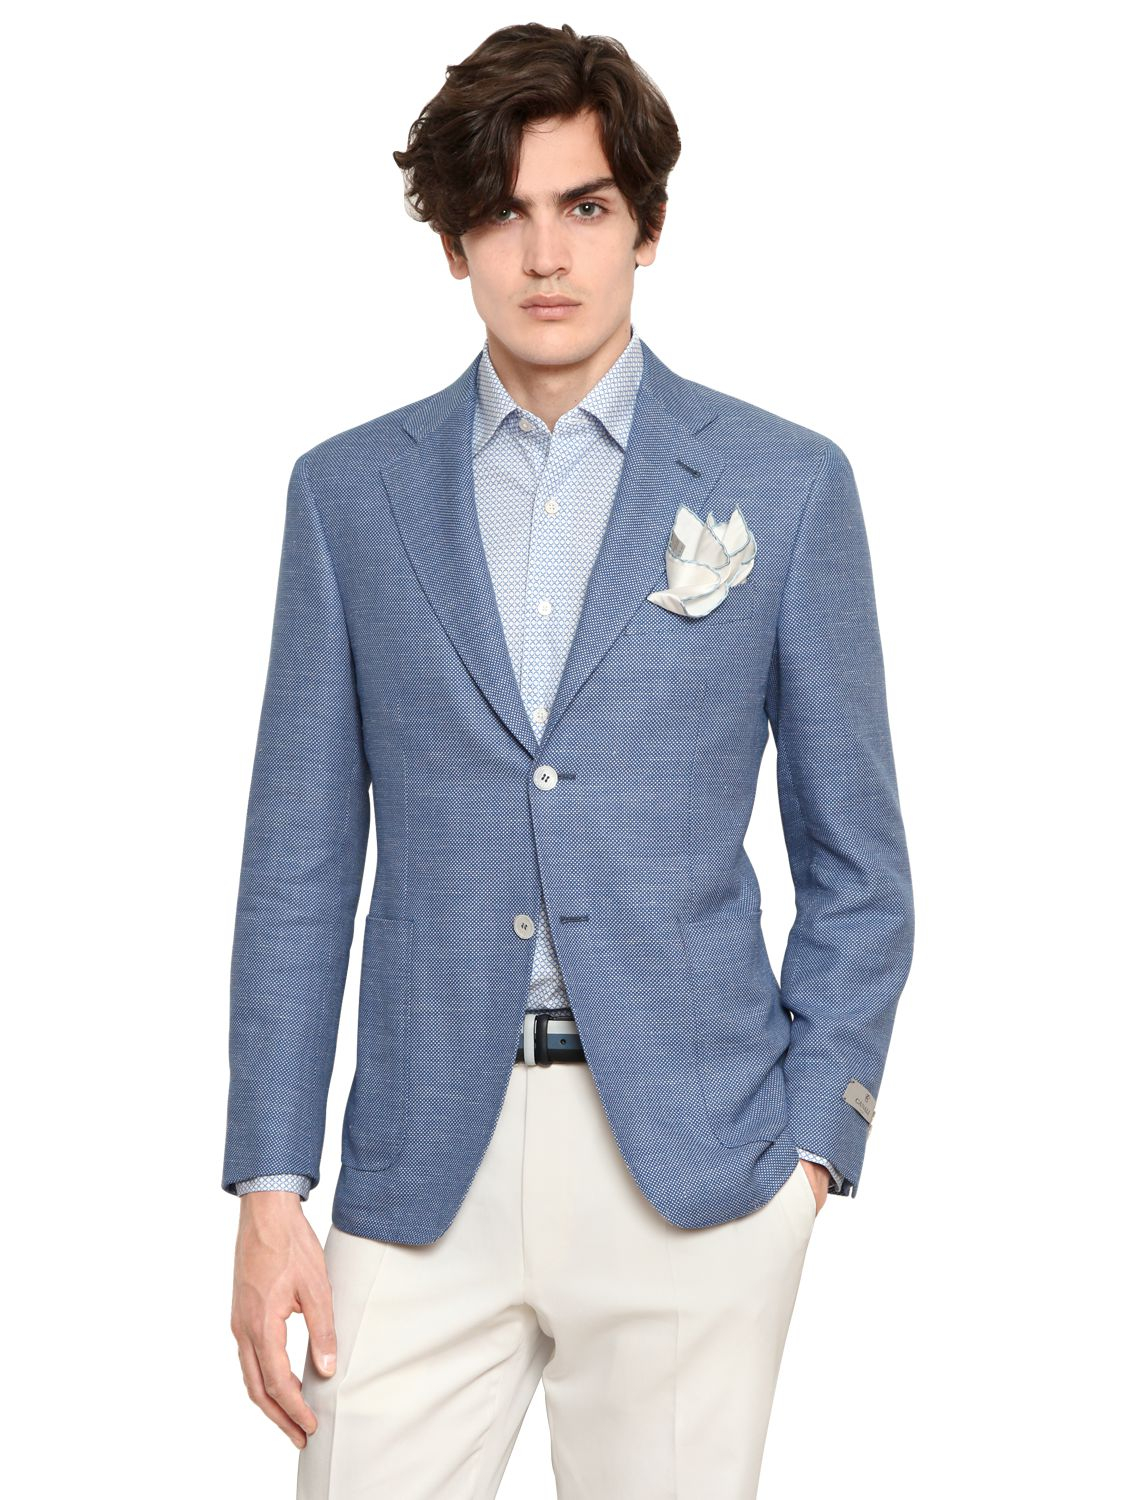 Lyst - Canali Cotton Blend Birdseye Kei Jacket in Blue for Men